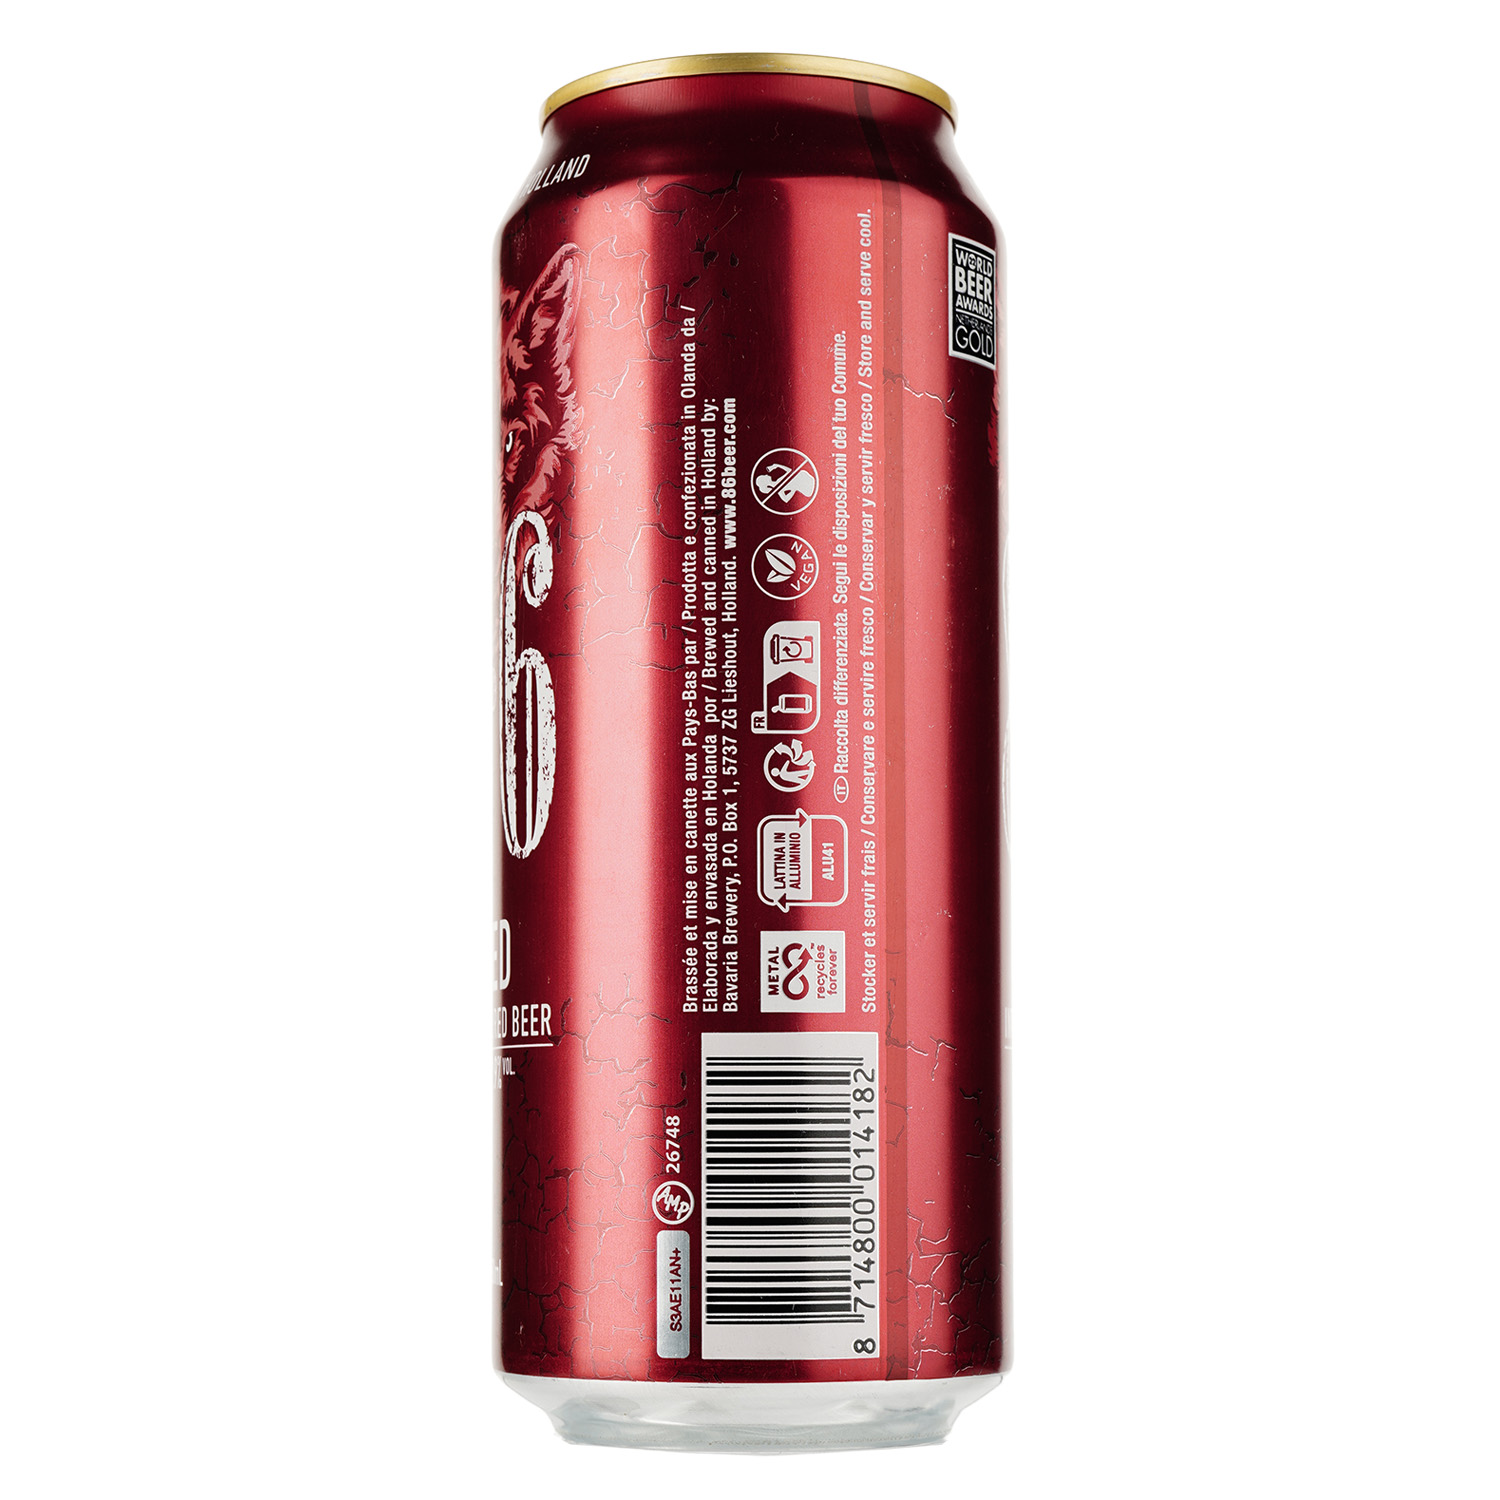 Пиво Bavaria 8.6, червоне, фільтроване, 7,9%, з/б, 0,5 л - фото 2